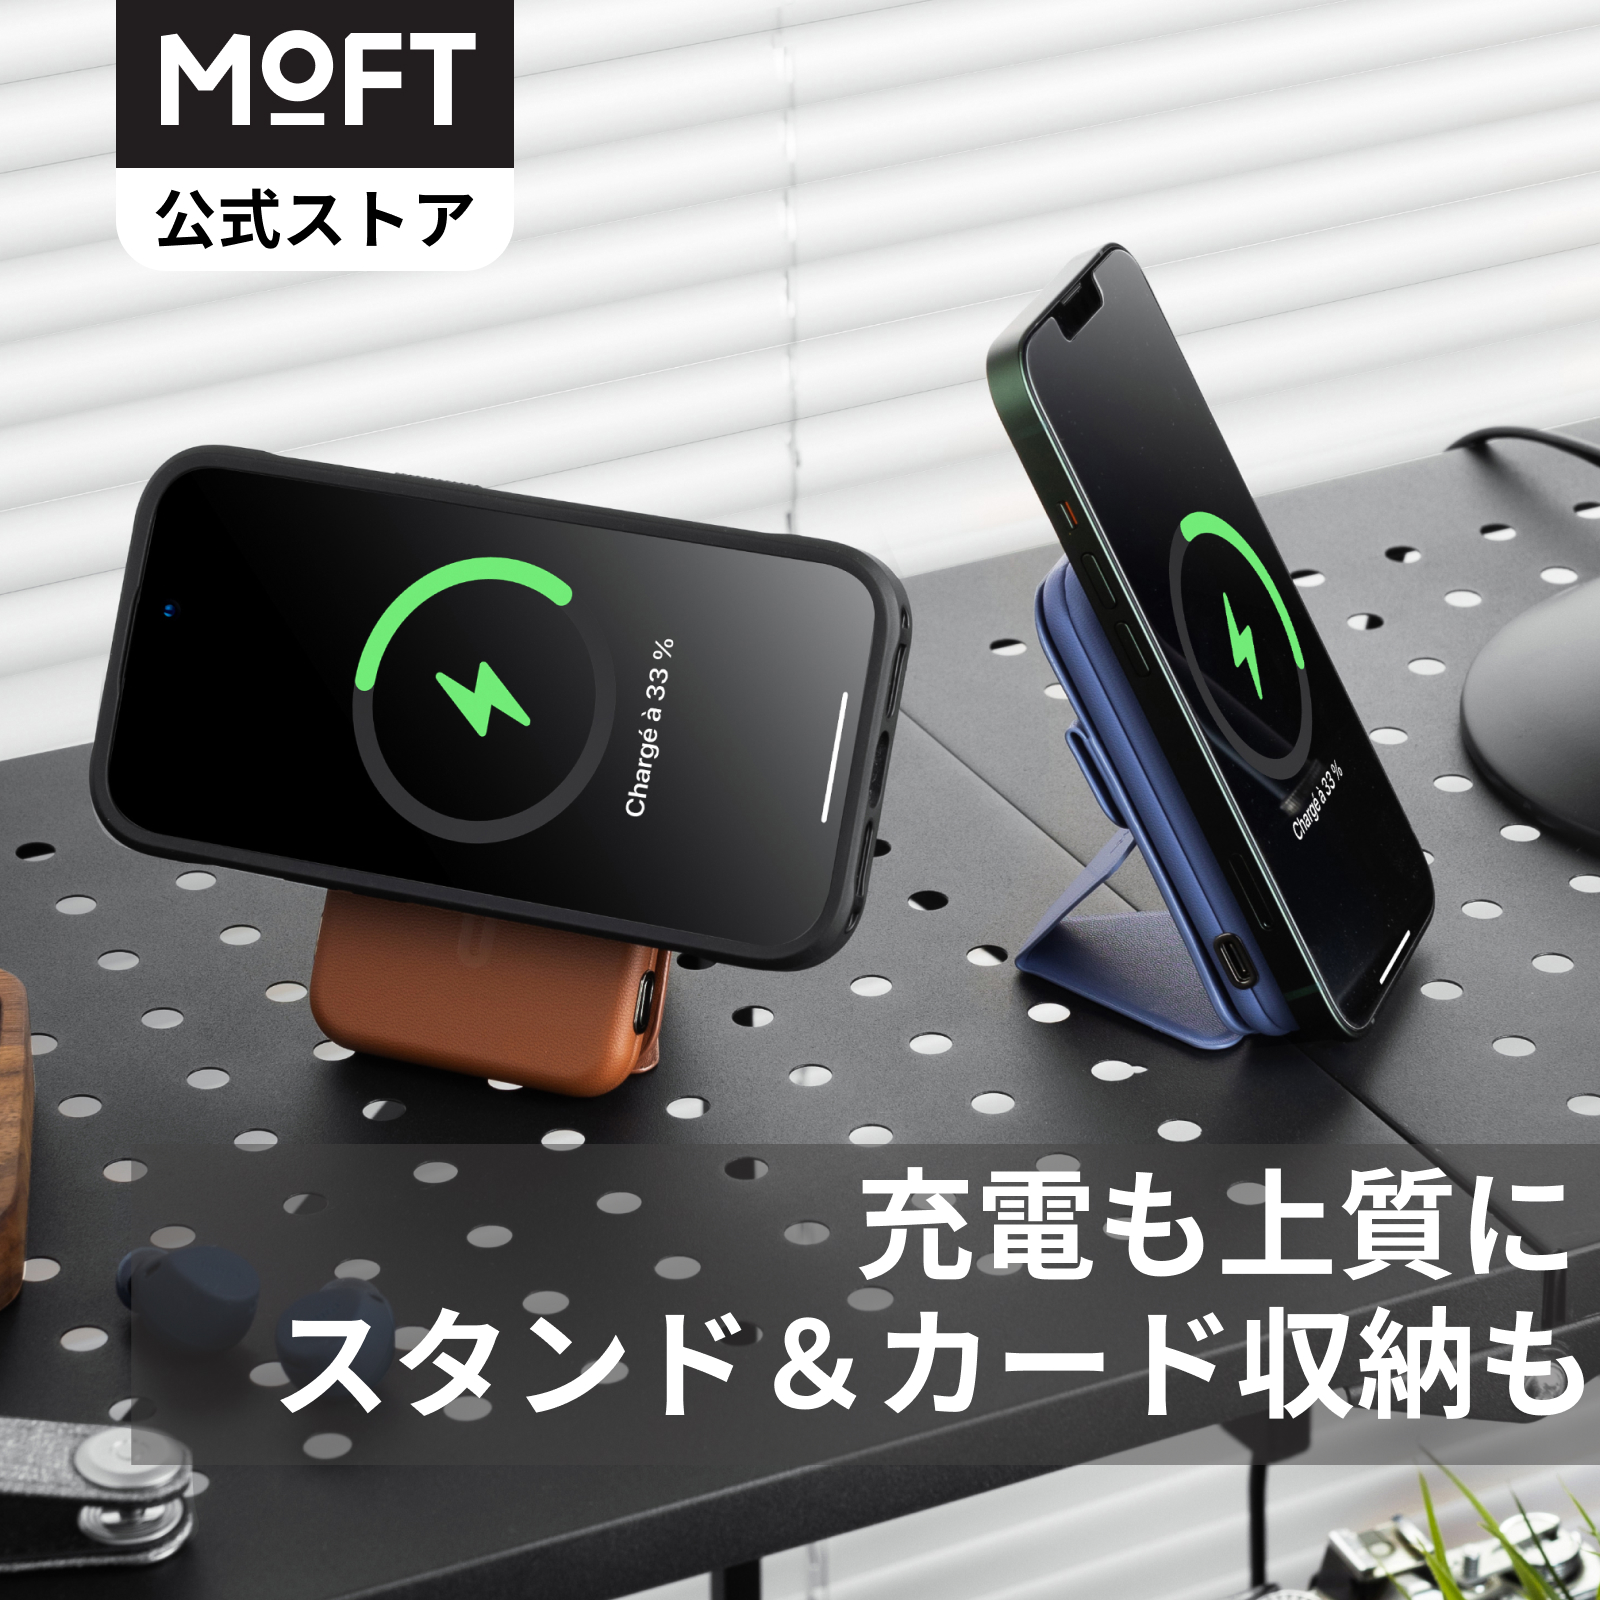 【MOFT公式〜充電も上質に】 Snap スタンドパワーセット モバイルバッテリー スマホスタンド カードカース マグネット式 ワイヤレス充電  マグネット充電端子 MagSafe対応 | MOFT OFFICIAL